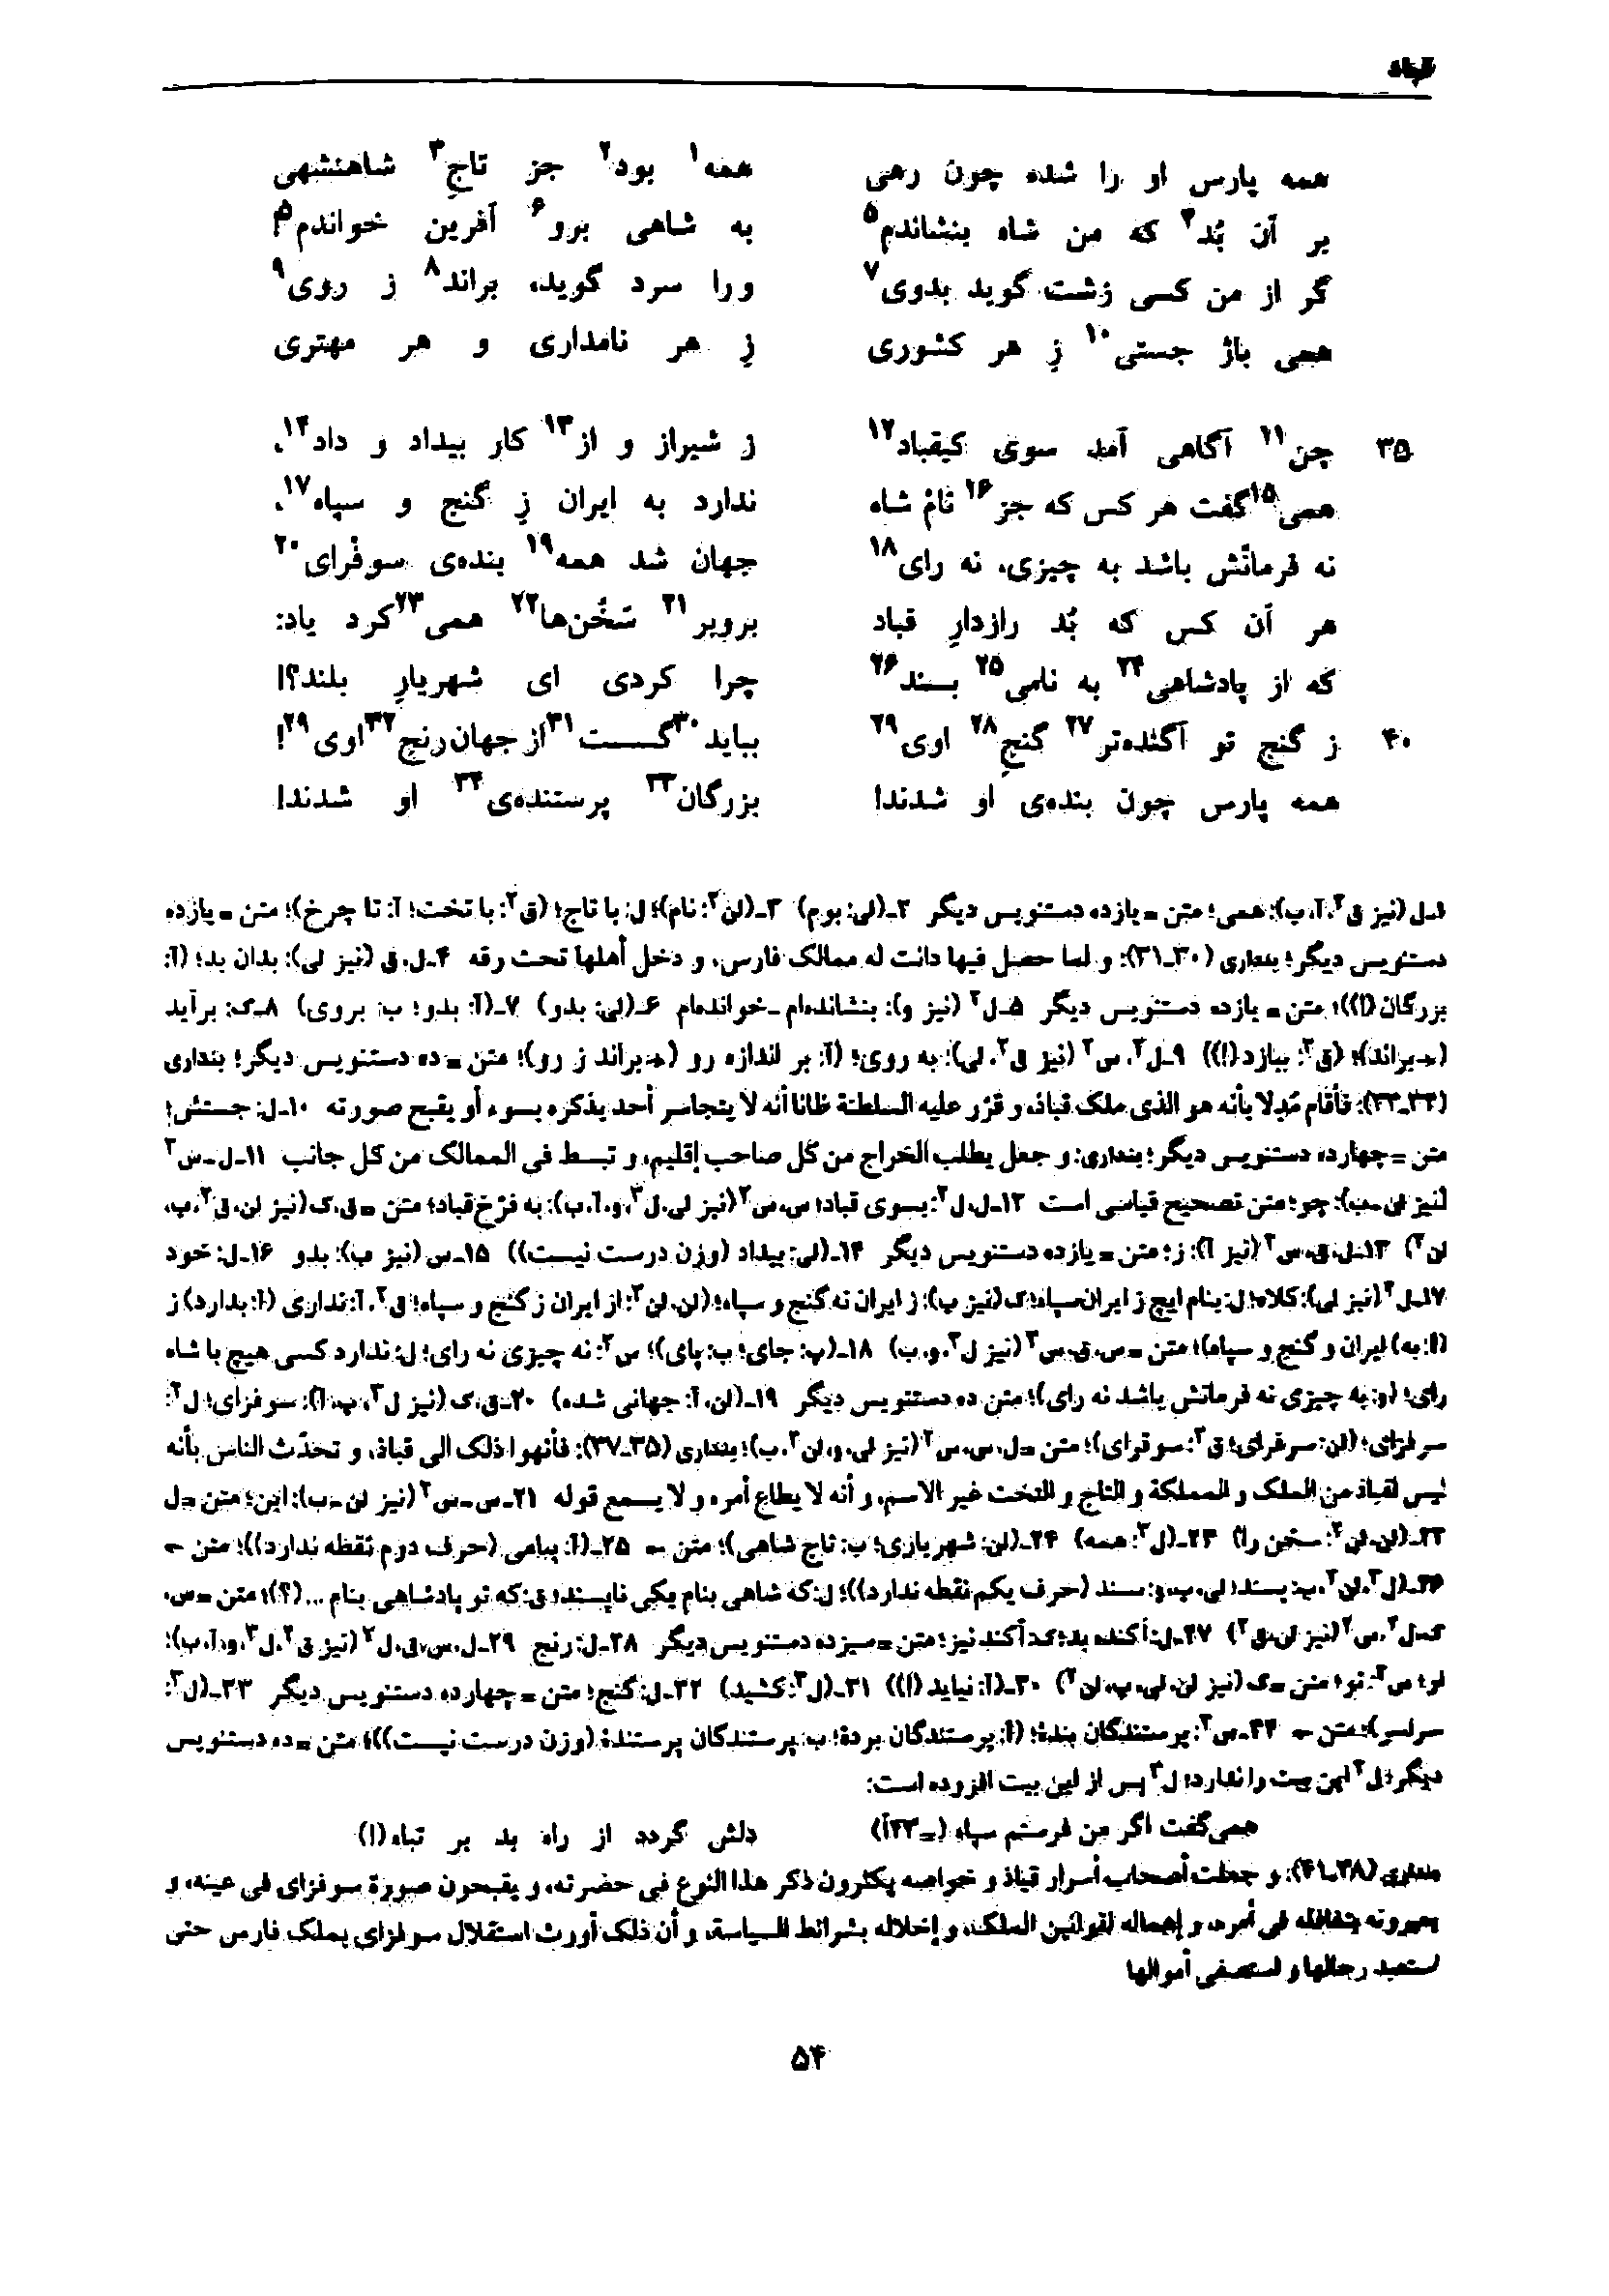 vol. 7, p. 54